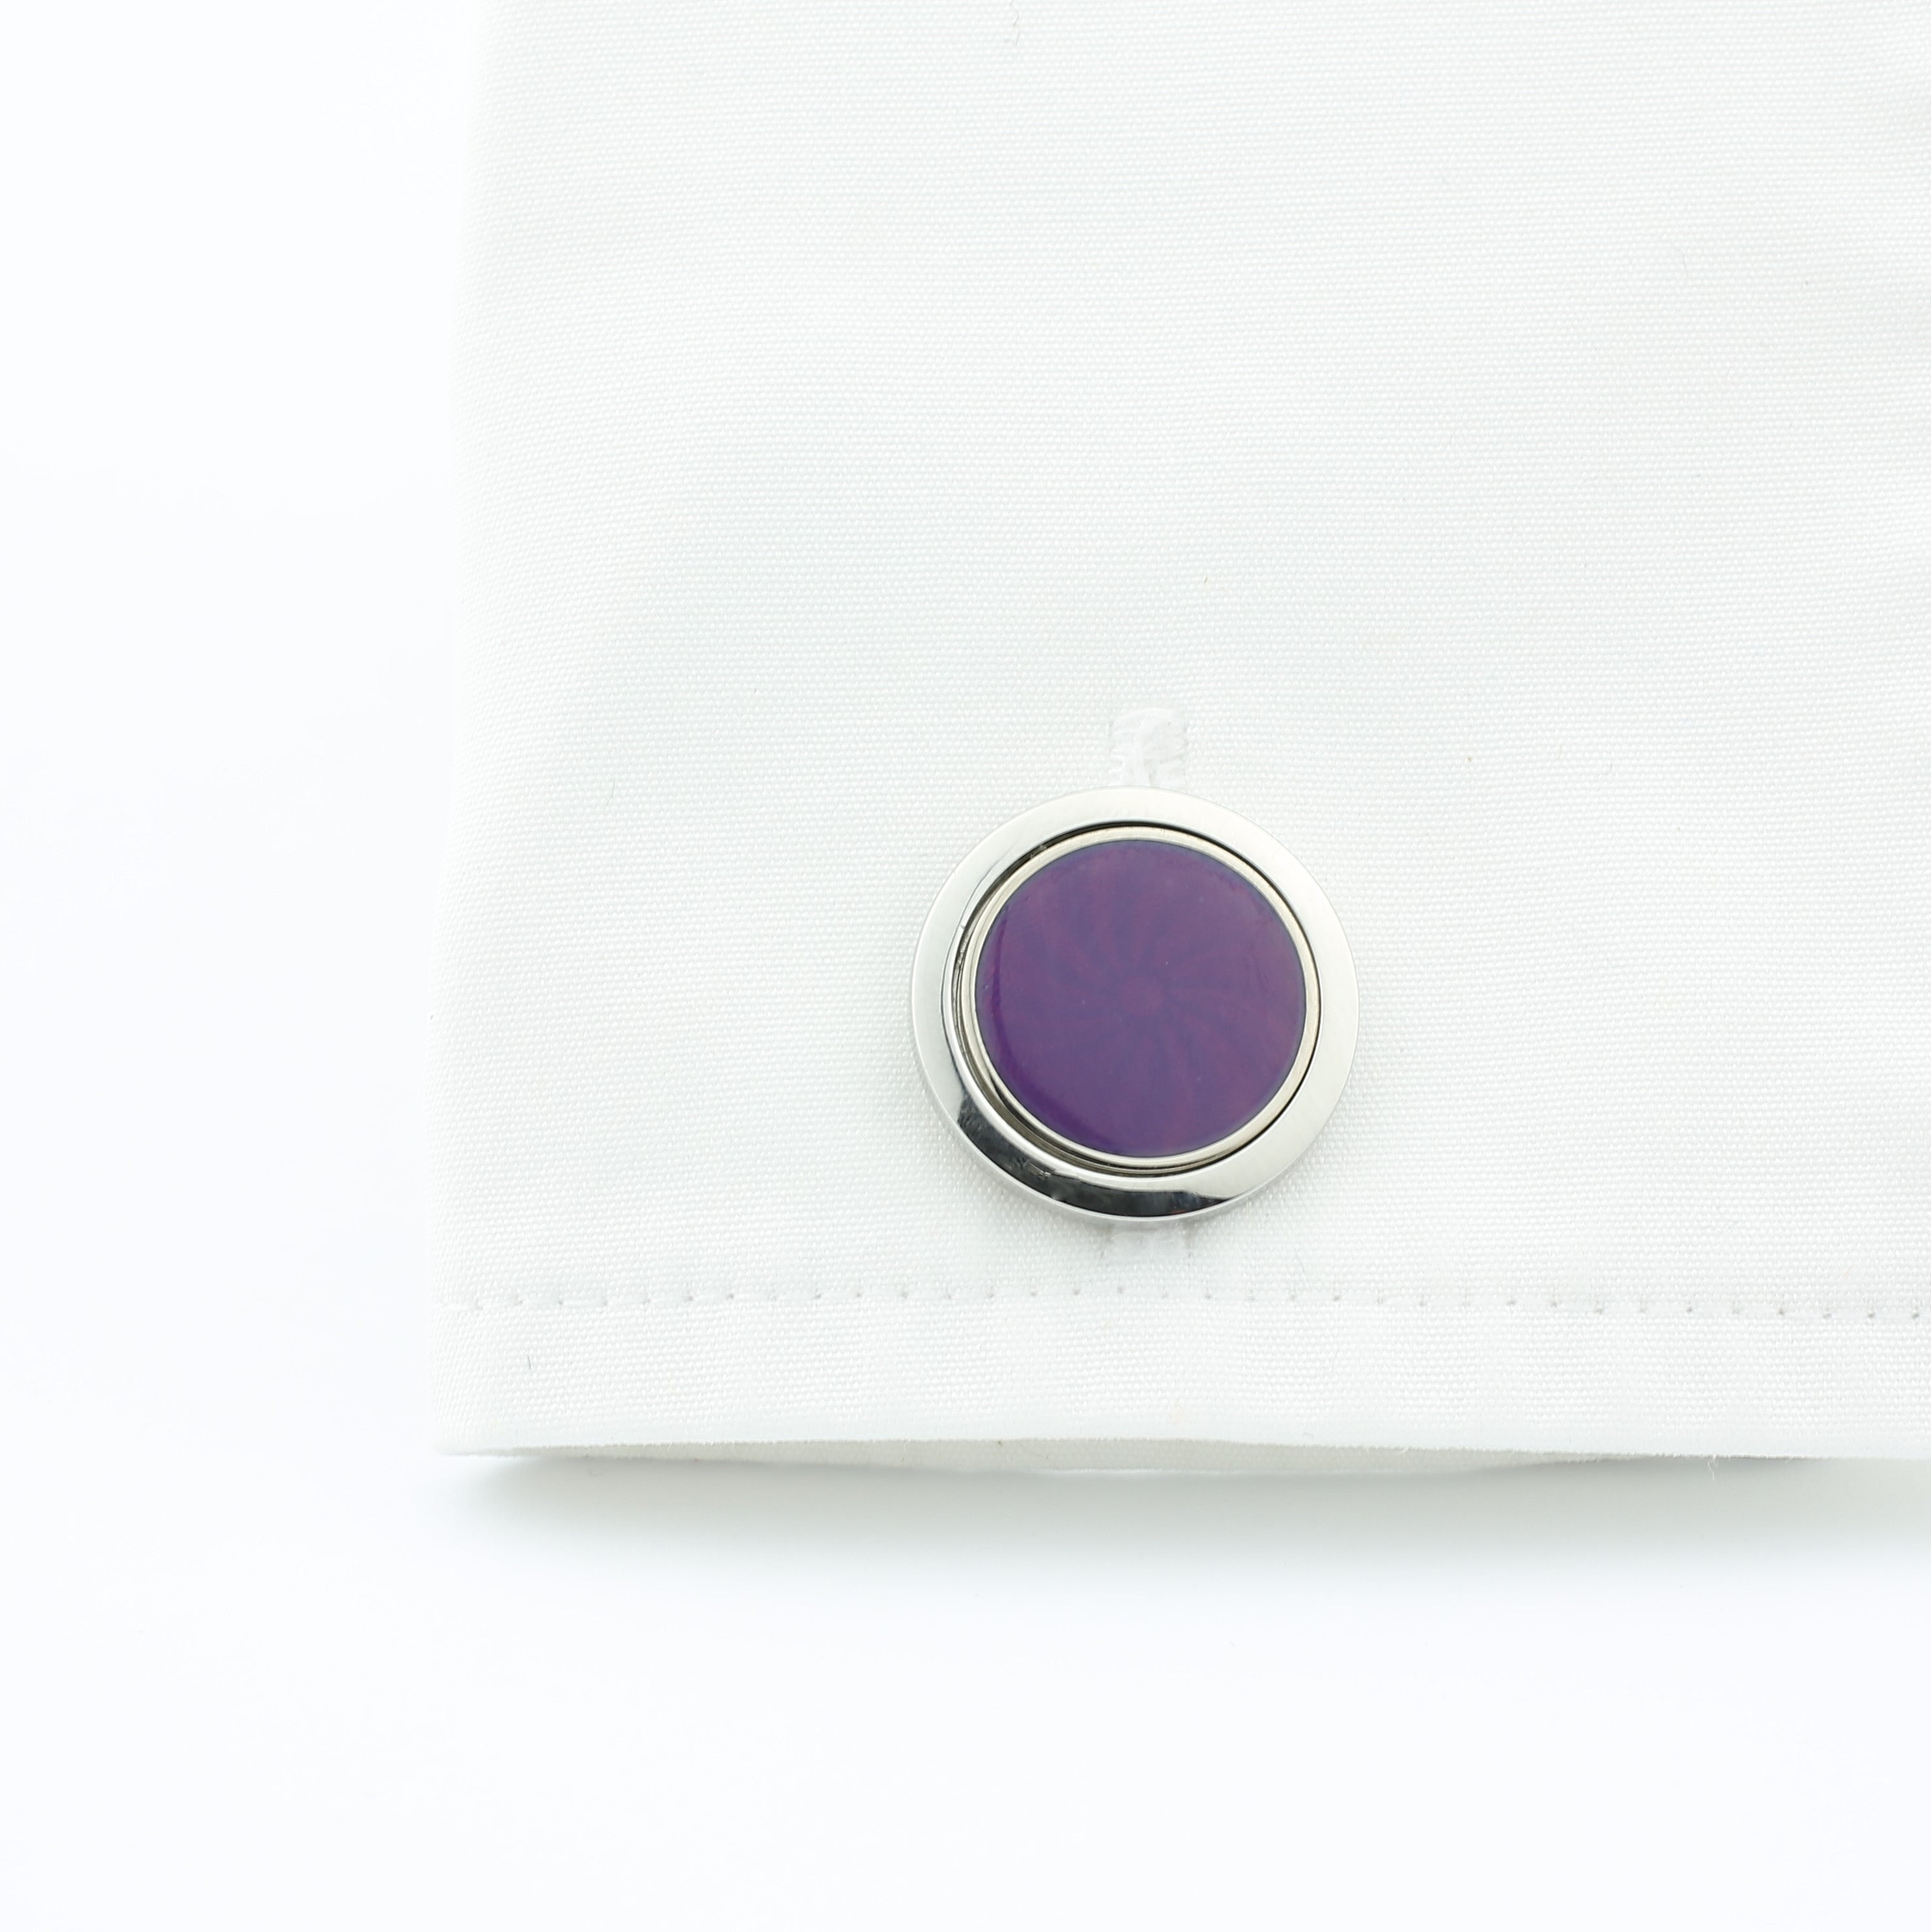 Astral purple enamel cufflinks in steel in a cuff